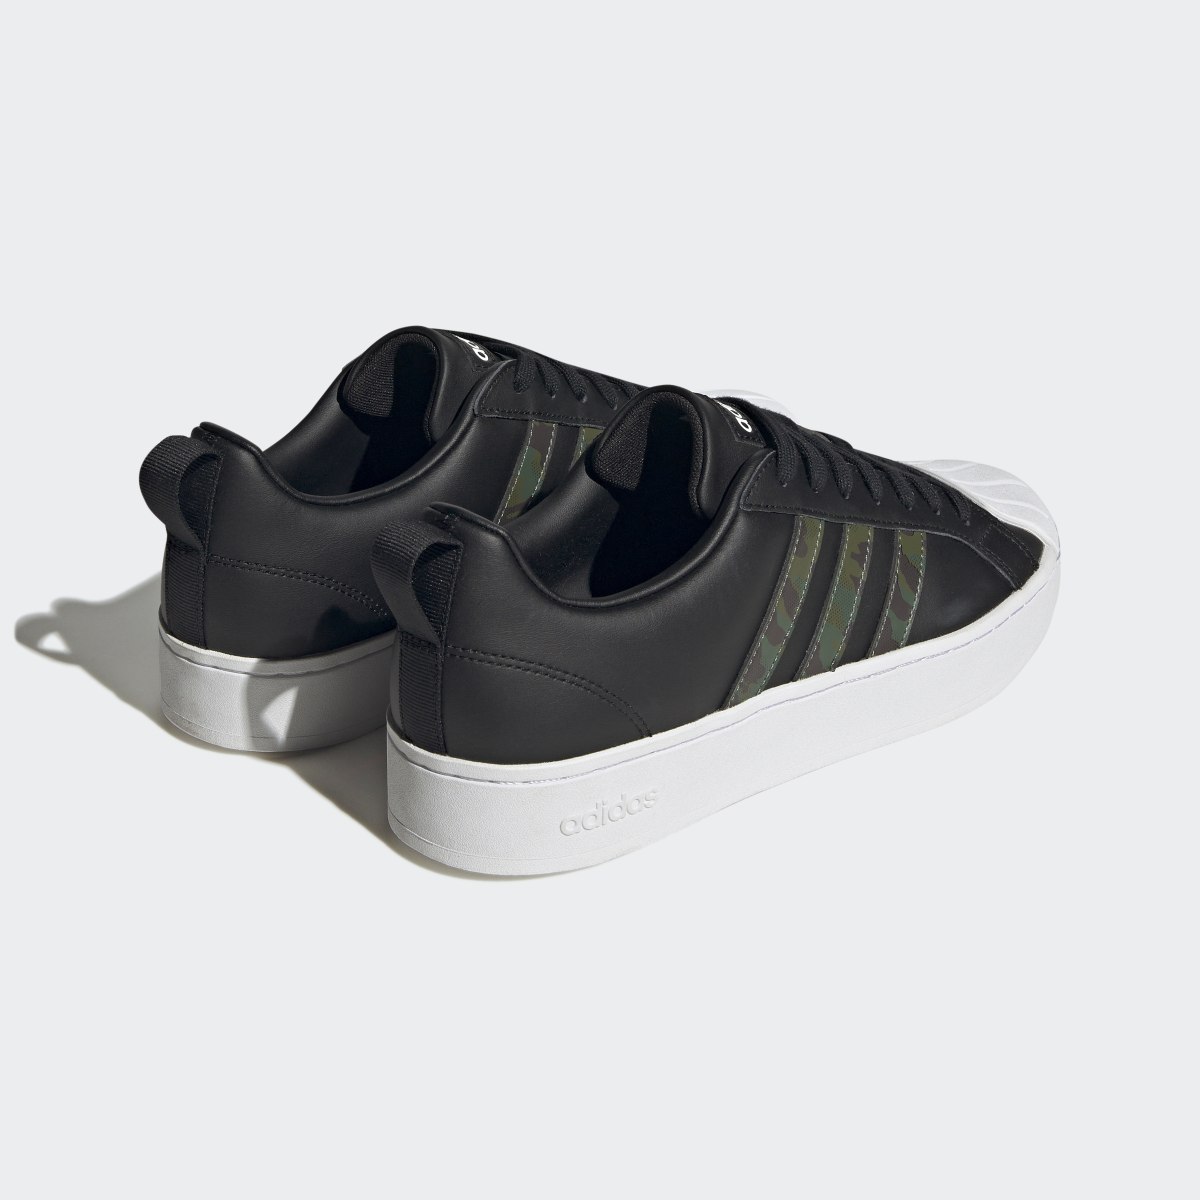 Adidas Chaussure à imprimé camouflage graphique Streetcheck Cloudfoam Lifestyle Basketball Low Court. 6